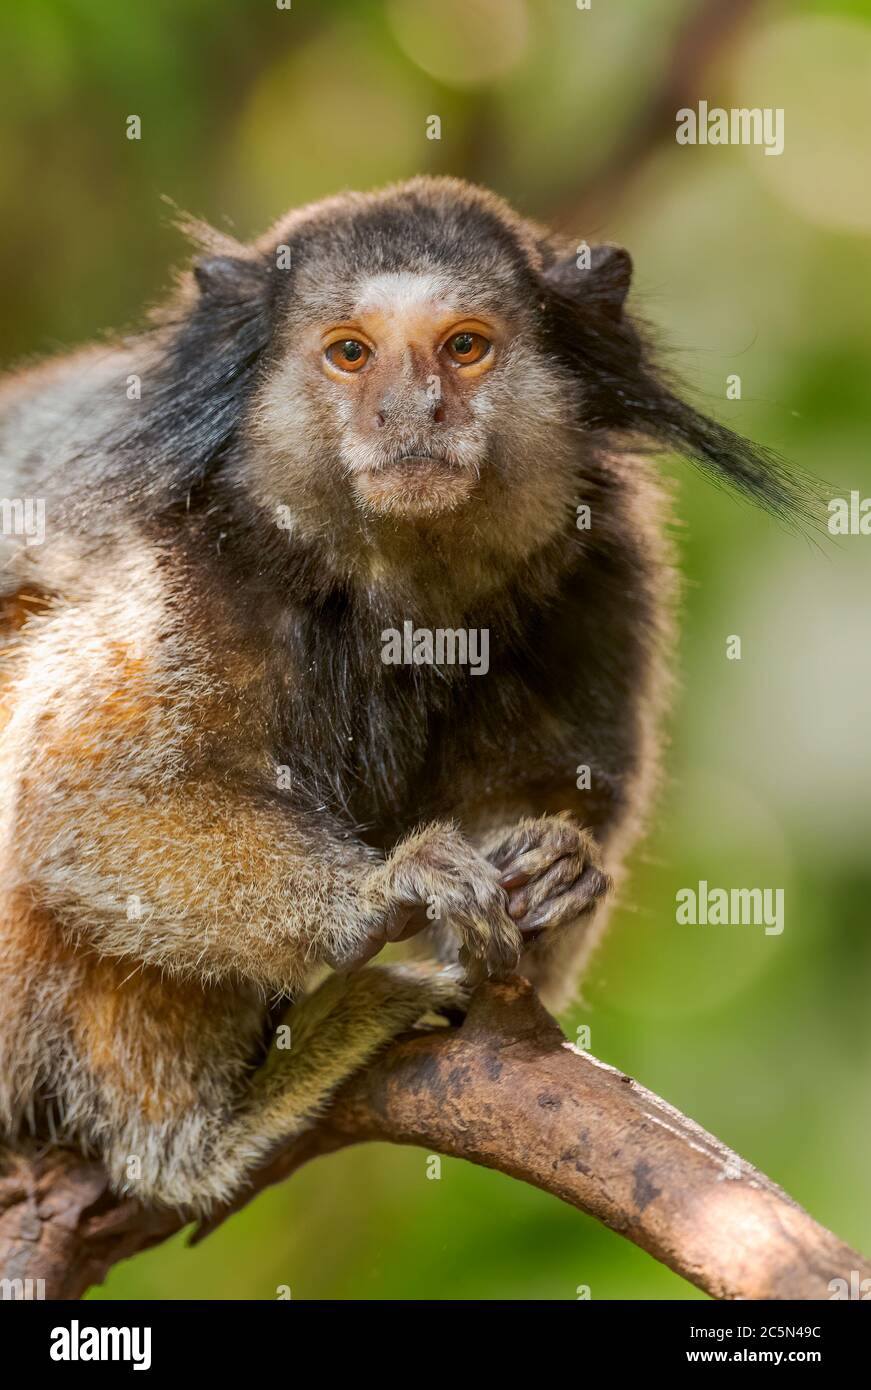 Marmoset touffeté noir - Callithirix penicillata, portrait de beau petit primate timide provenant de forêts sud-américaines, Brésil. Banque D'Images